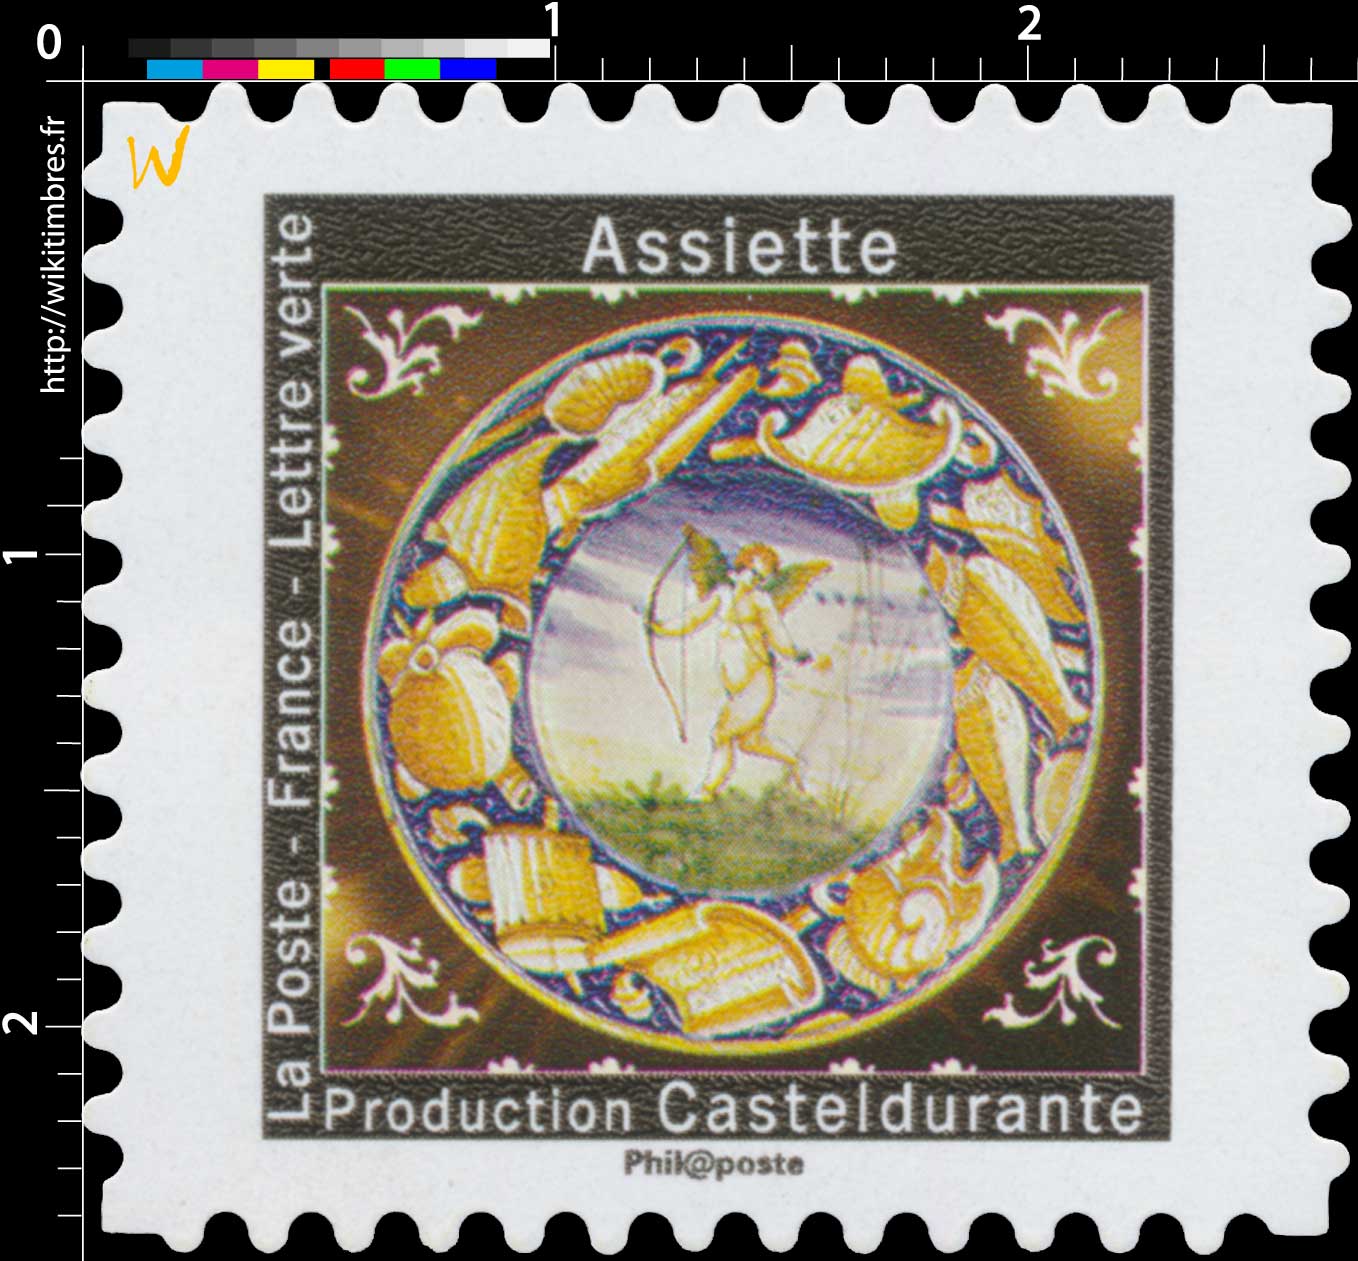 2019 Assiette - Production Casteldurante